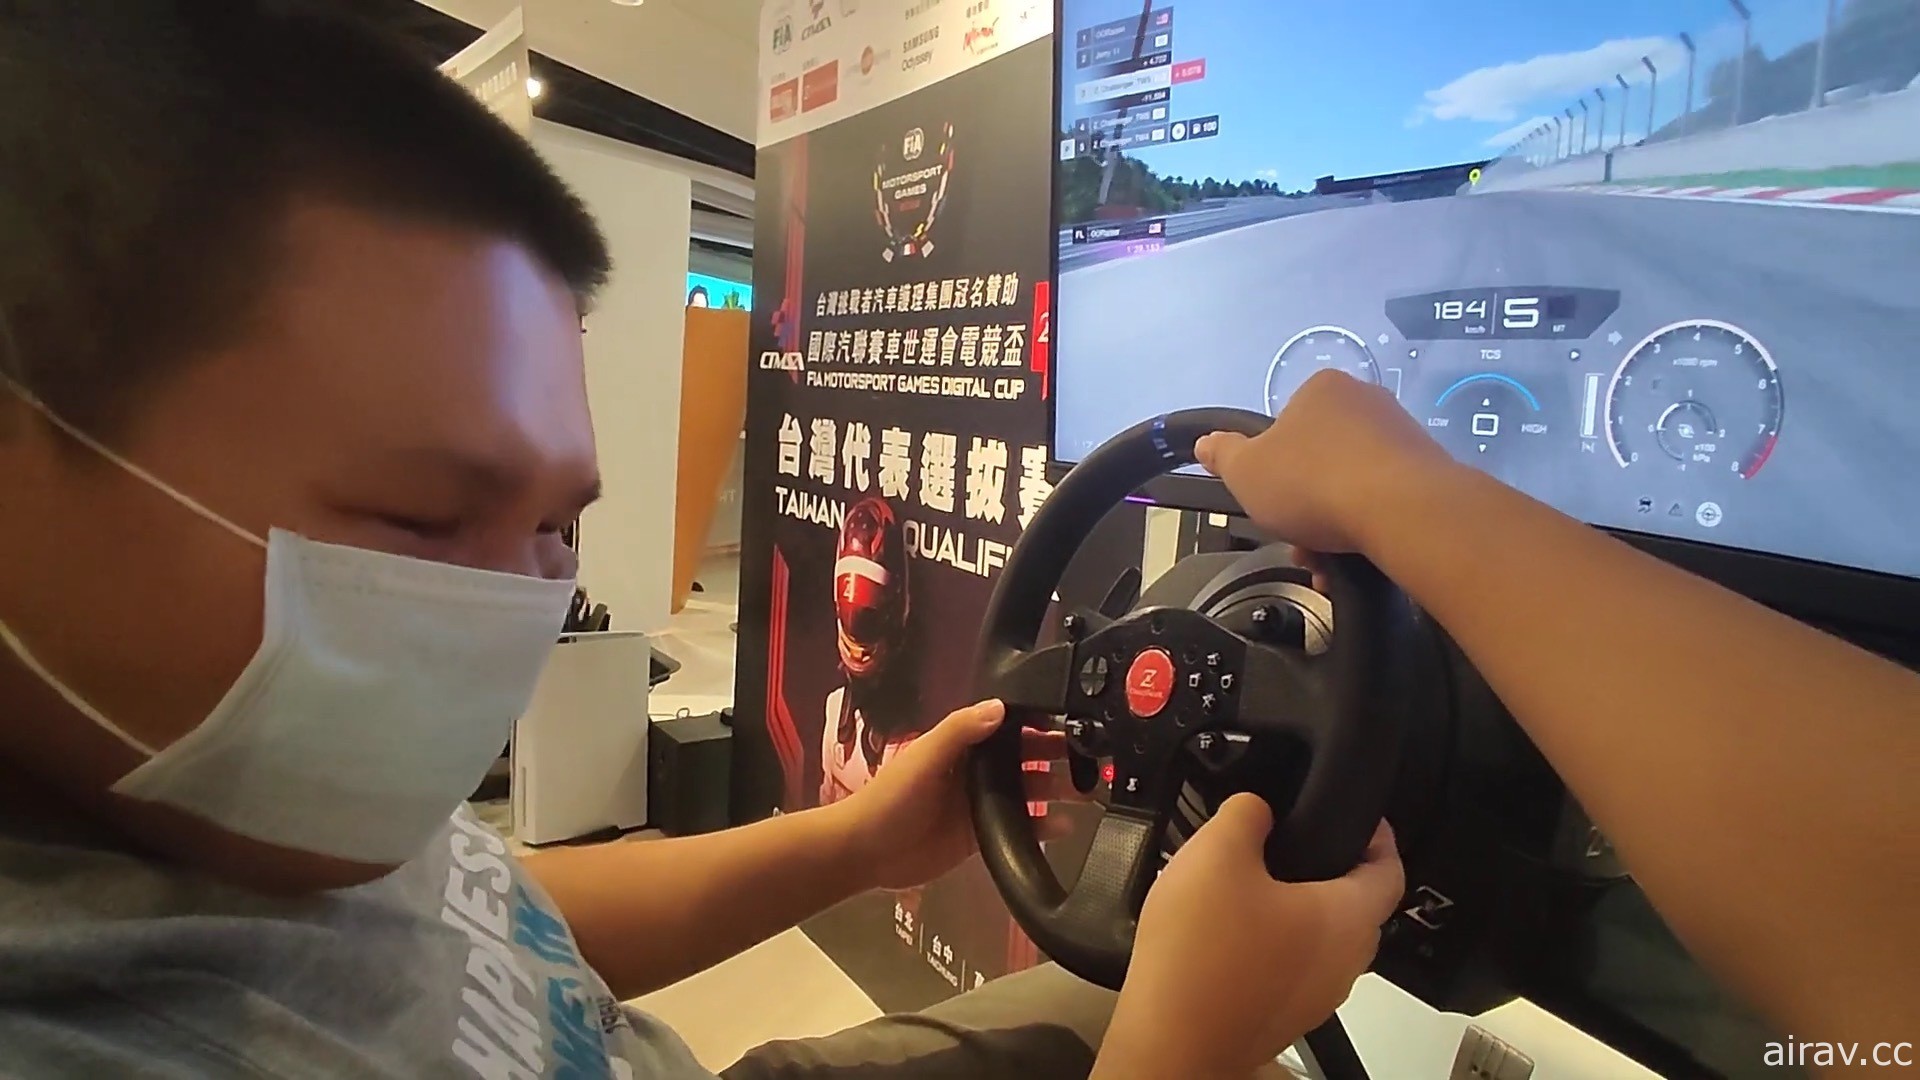 「2022 FIA MSG Digital Cup 台灣代表選拔賽」6 月開跑 首次服務全盲人士駕駛模擬賽車